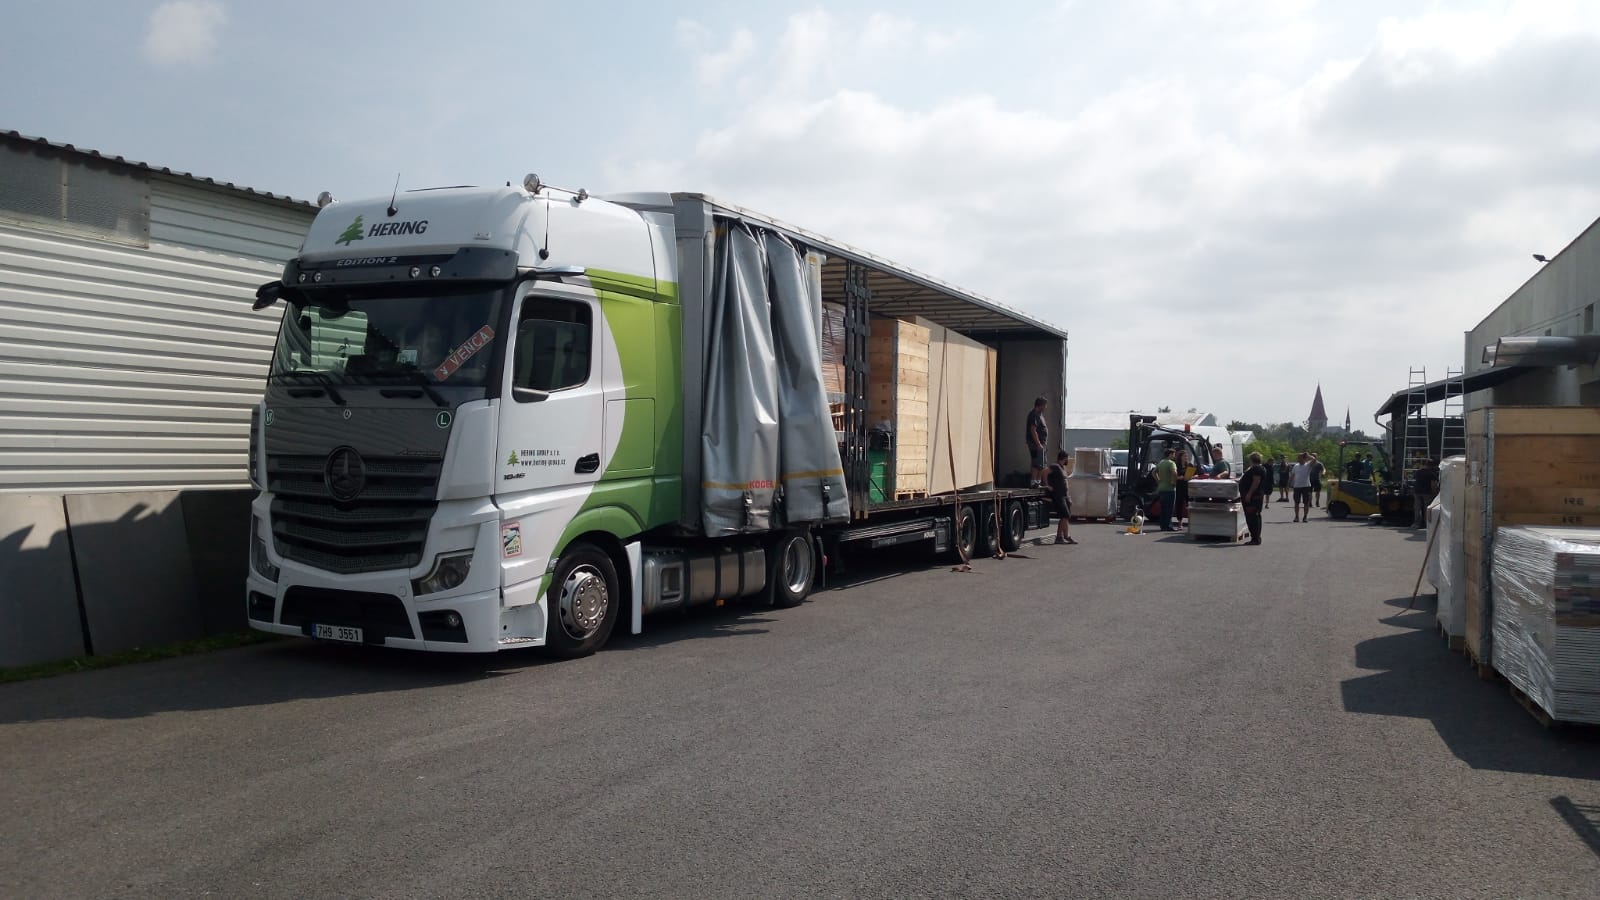 Mezinárodní kamionová přeprava, vnitrostátní doprava v rámci ČR a EU